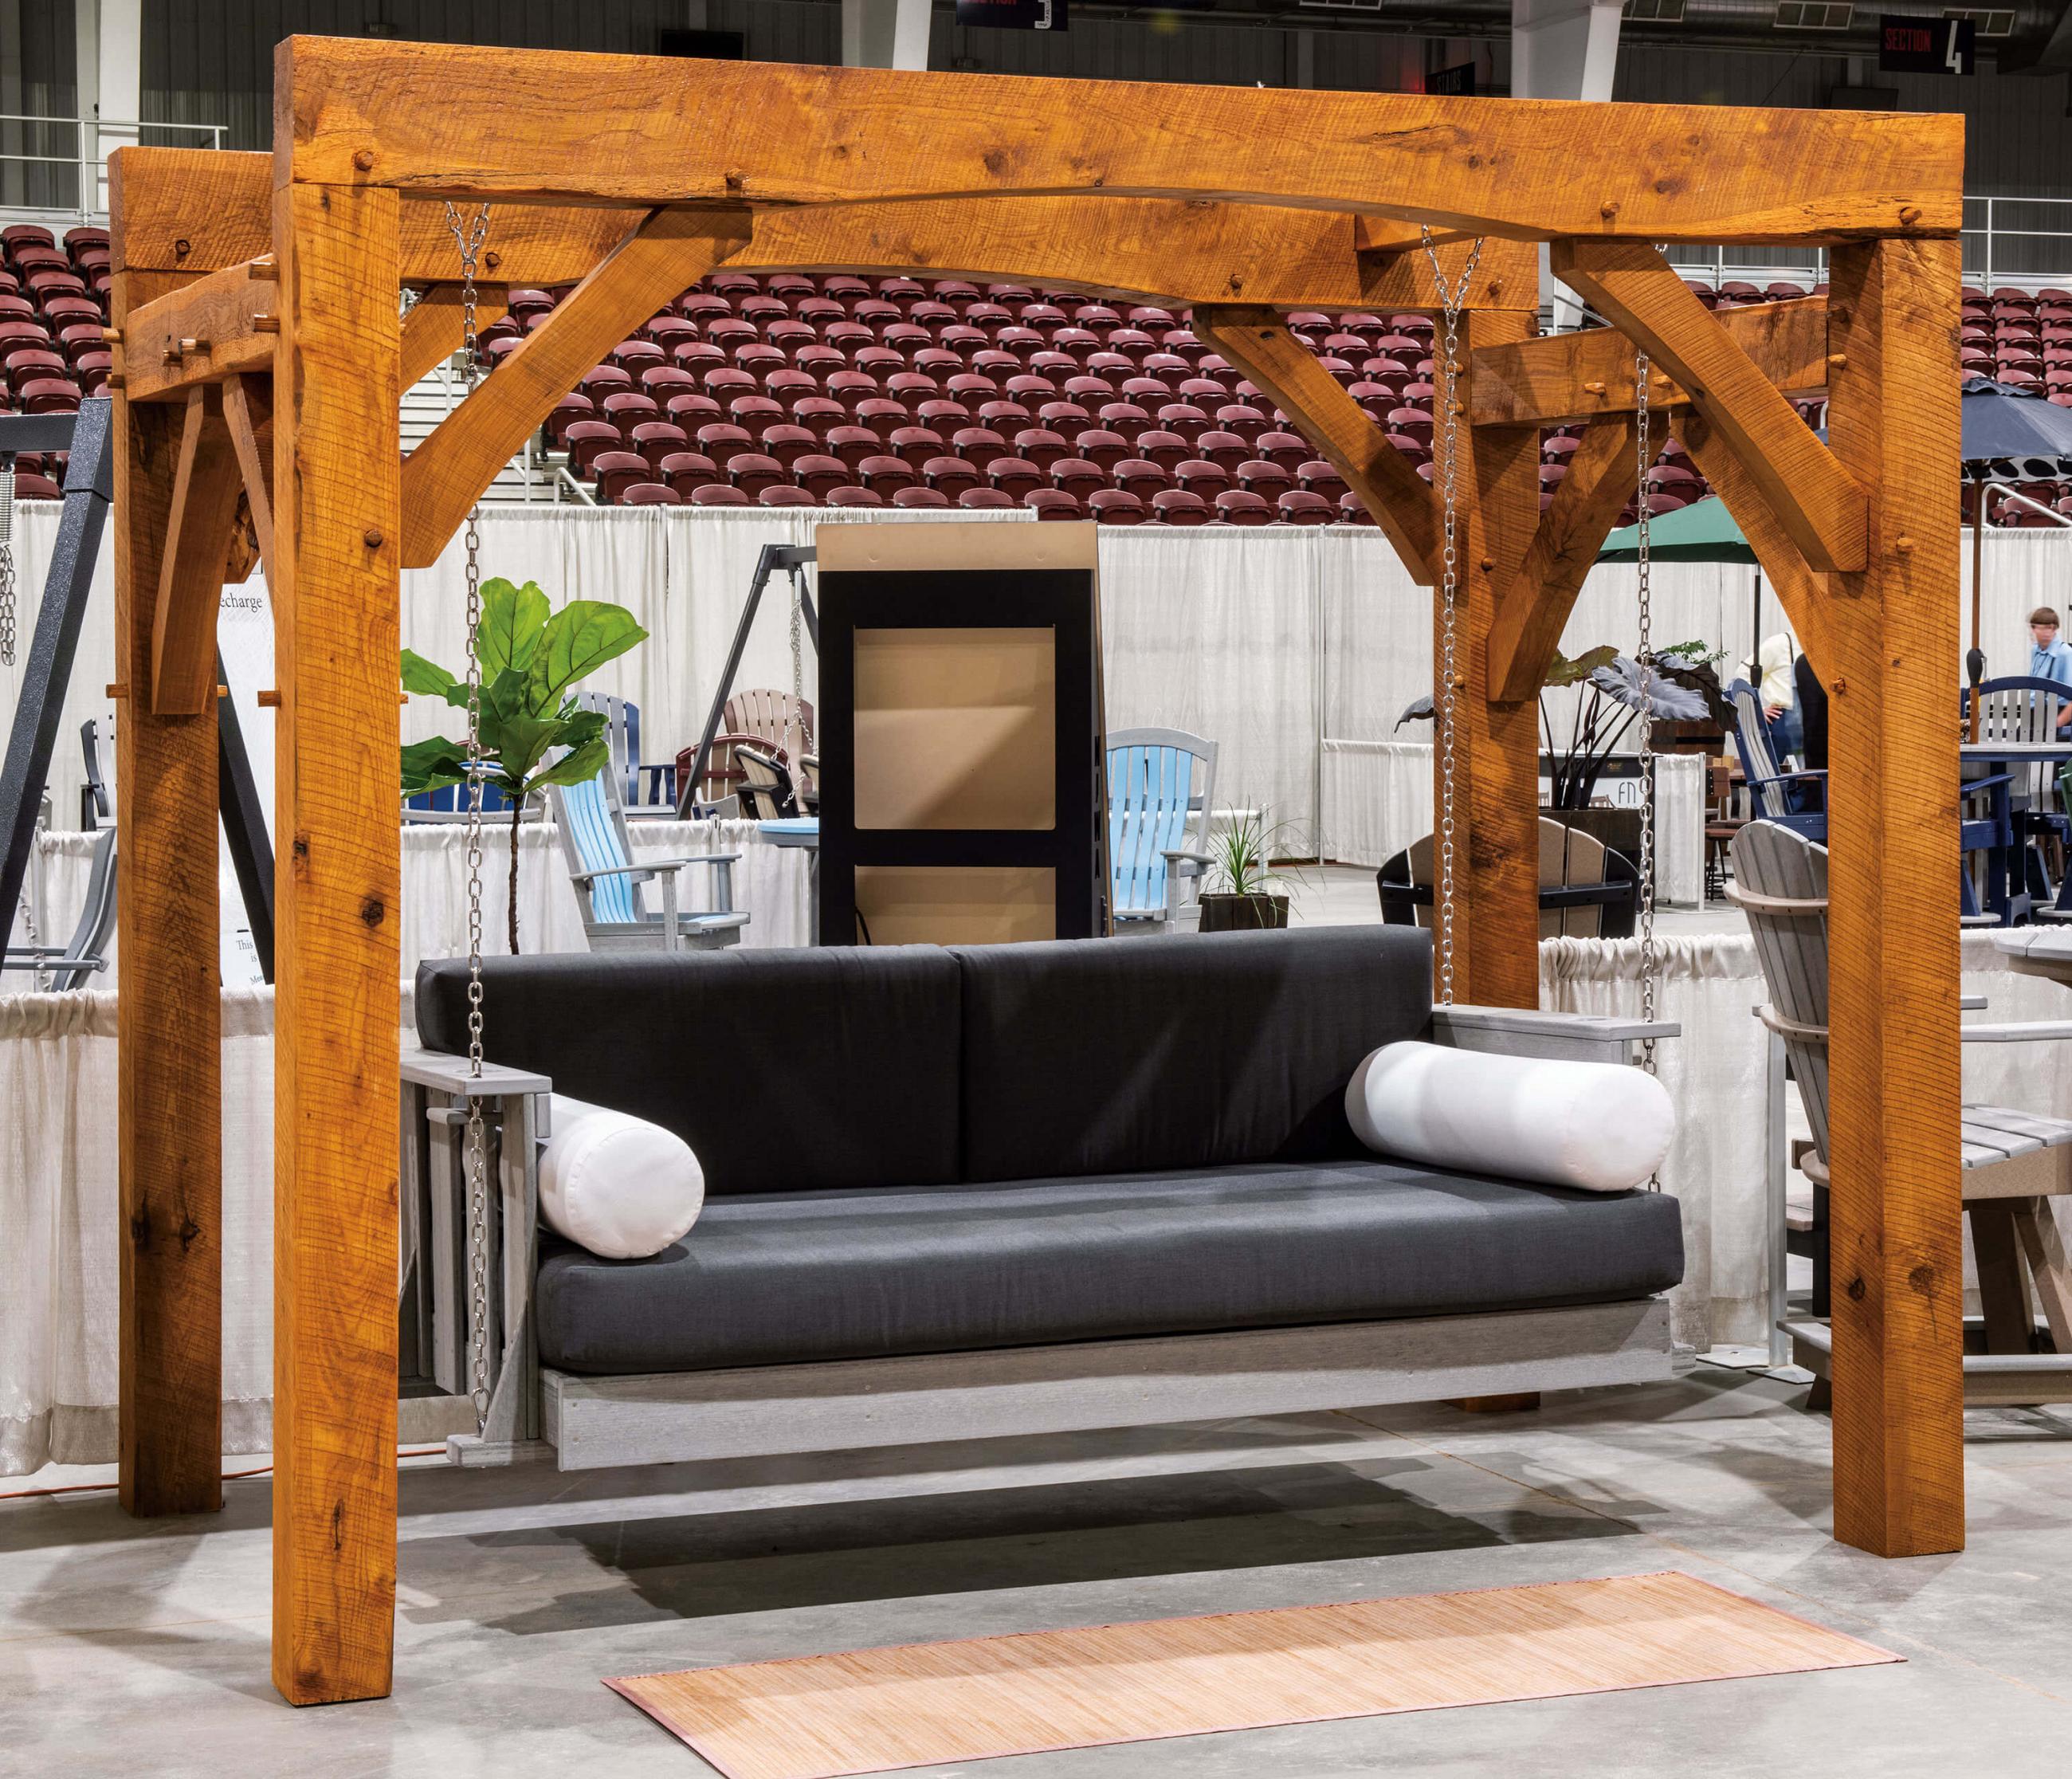 2021 NIWA Amish Furniture Expo